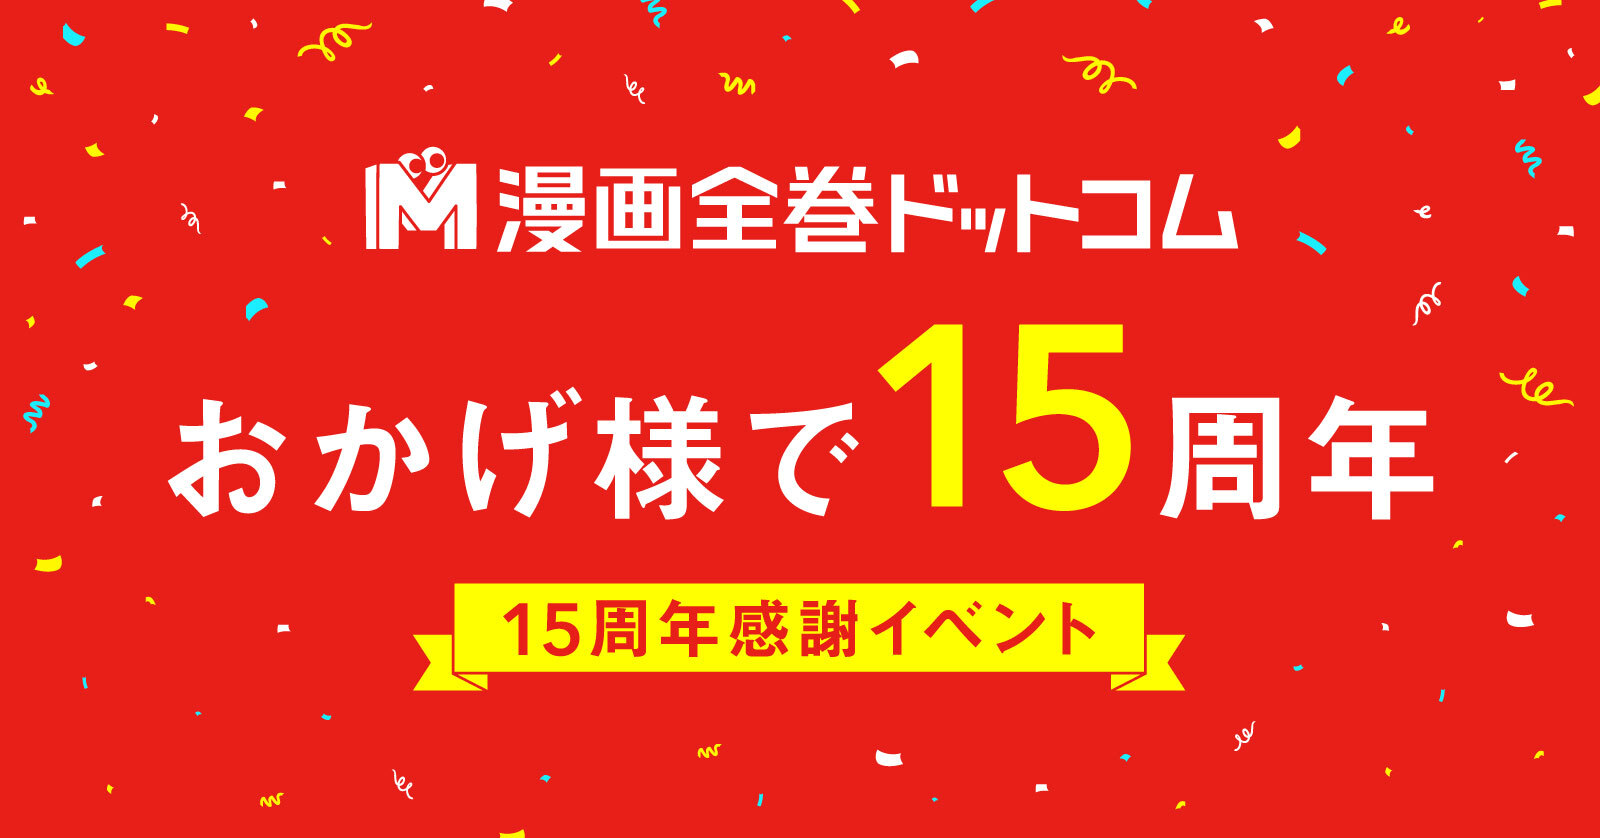 漫画全巻ドットコム 15周年記念キャンペーン